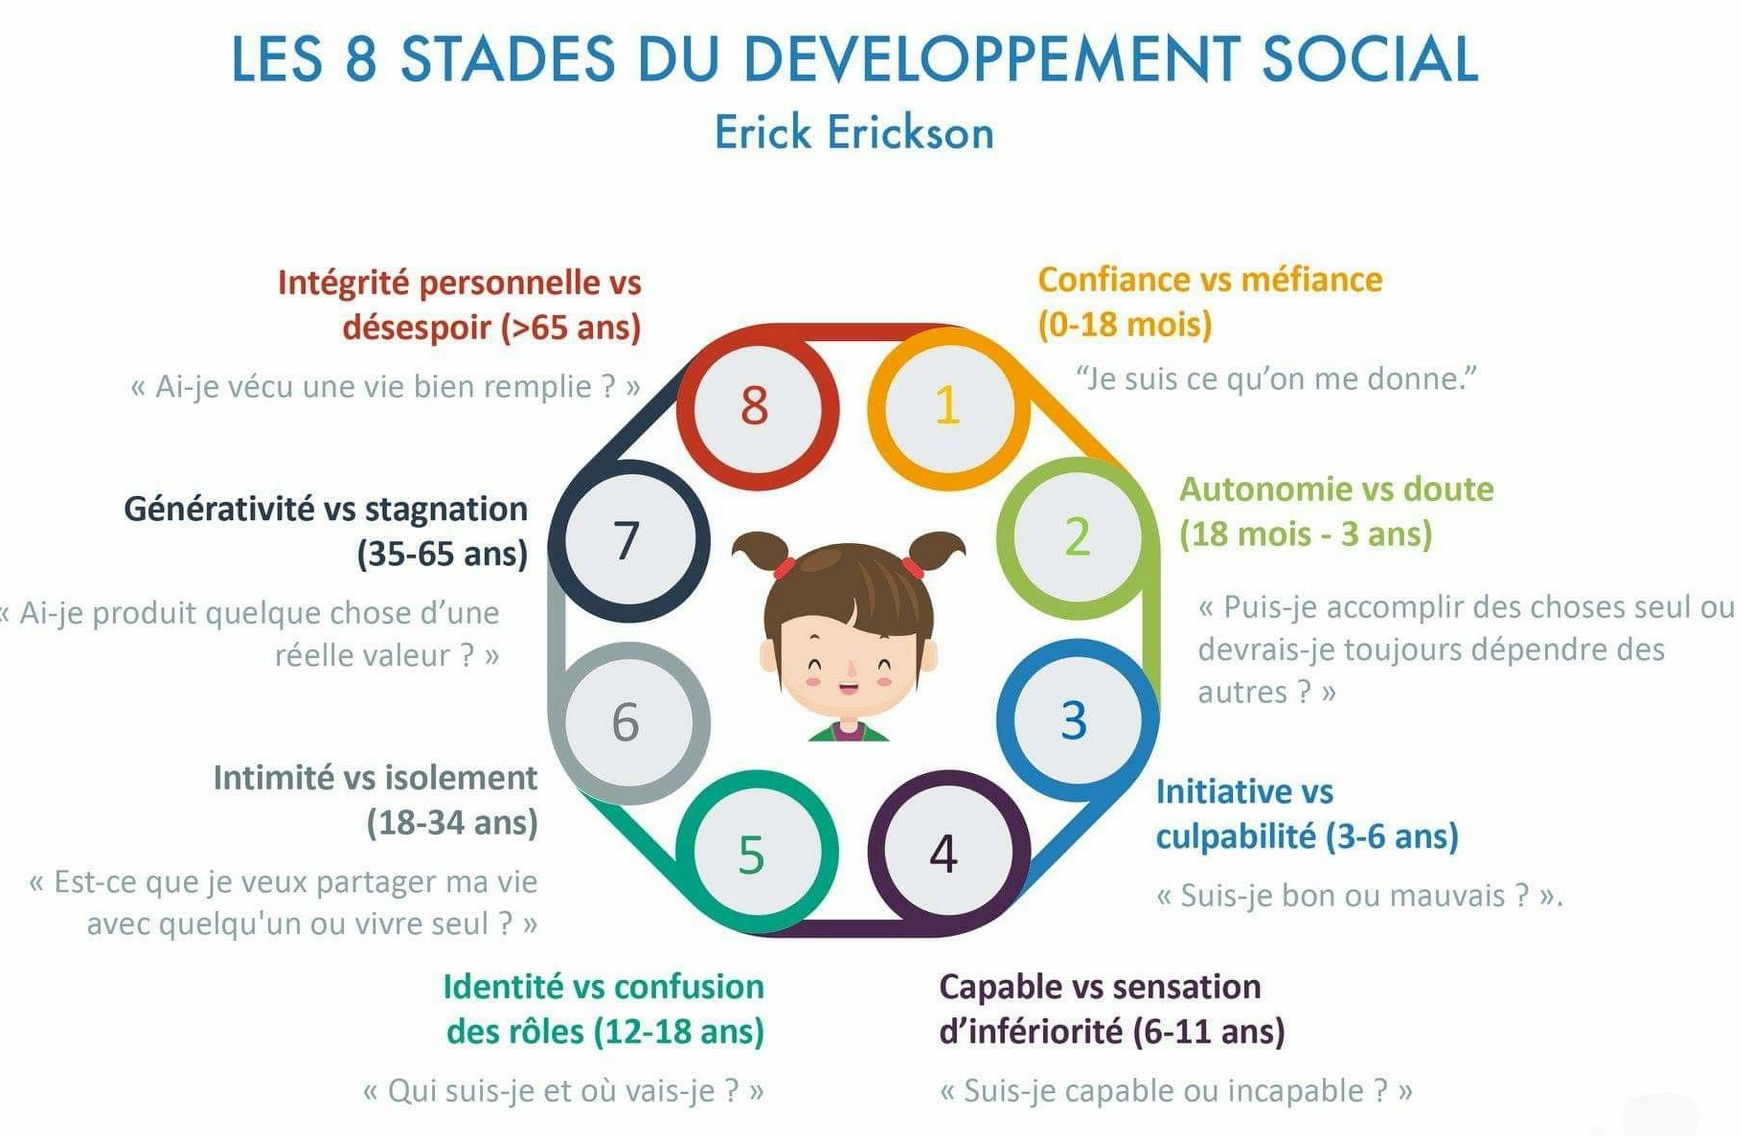 Les 8 stades du développement social